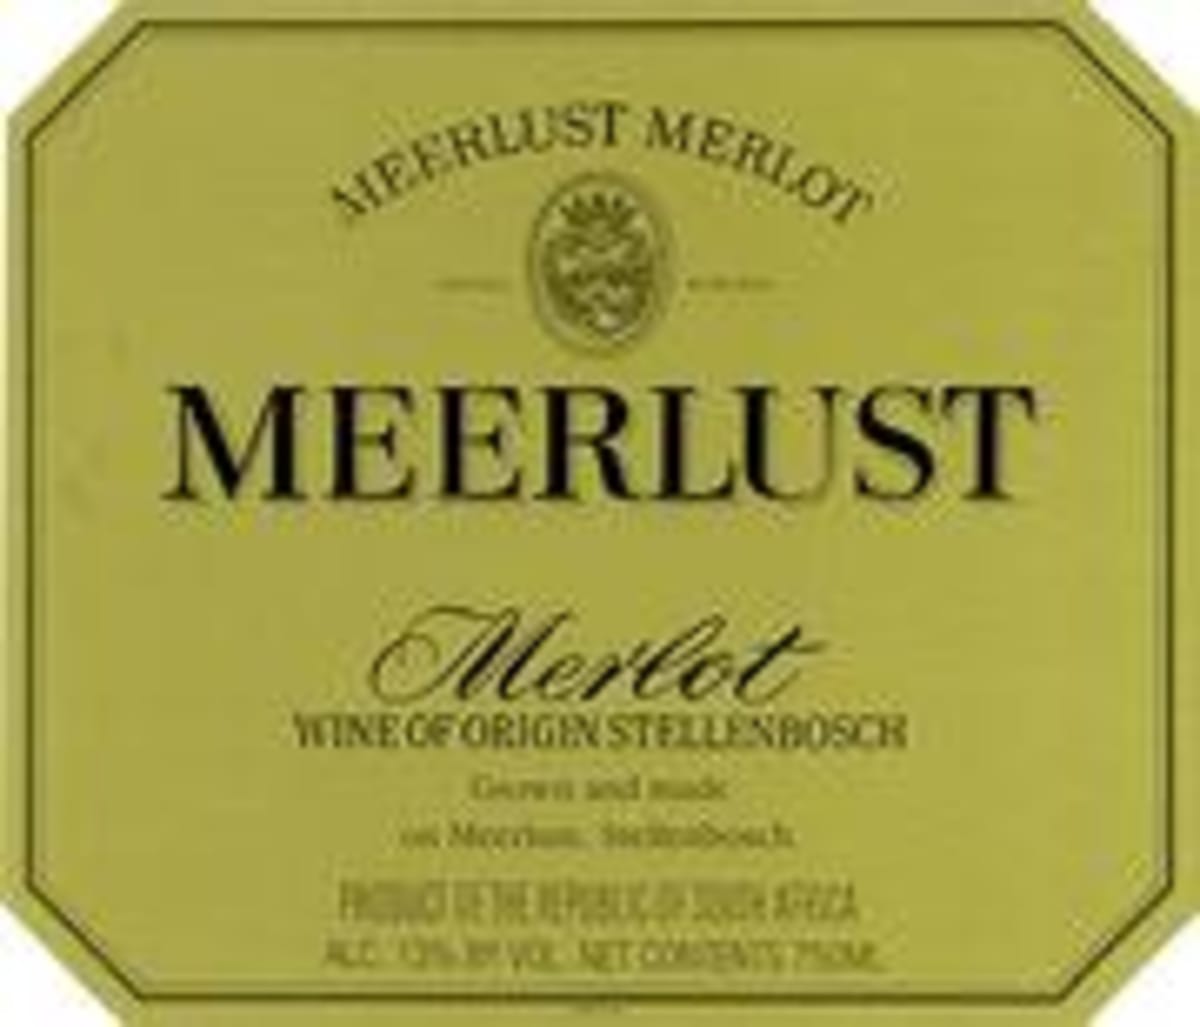 Meerlust Merlot 1998 Front Label